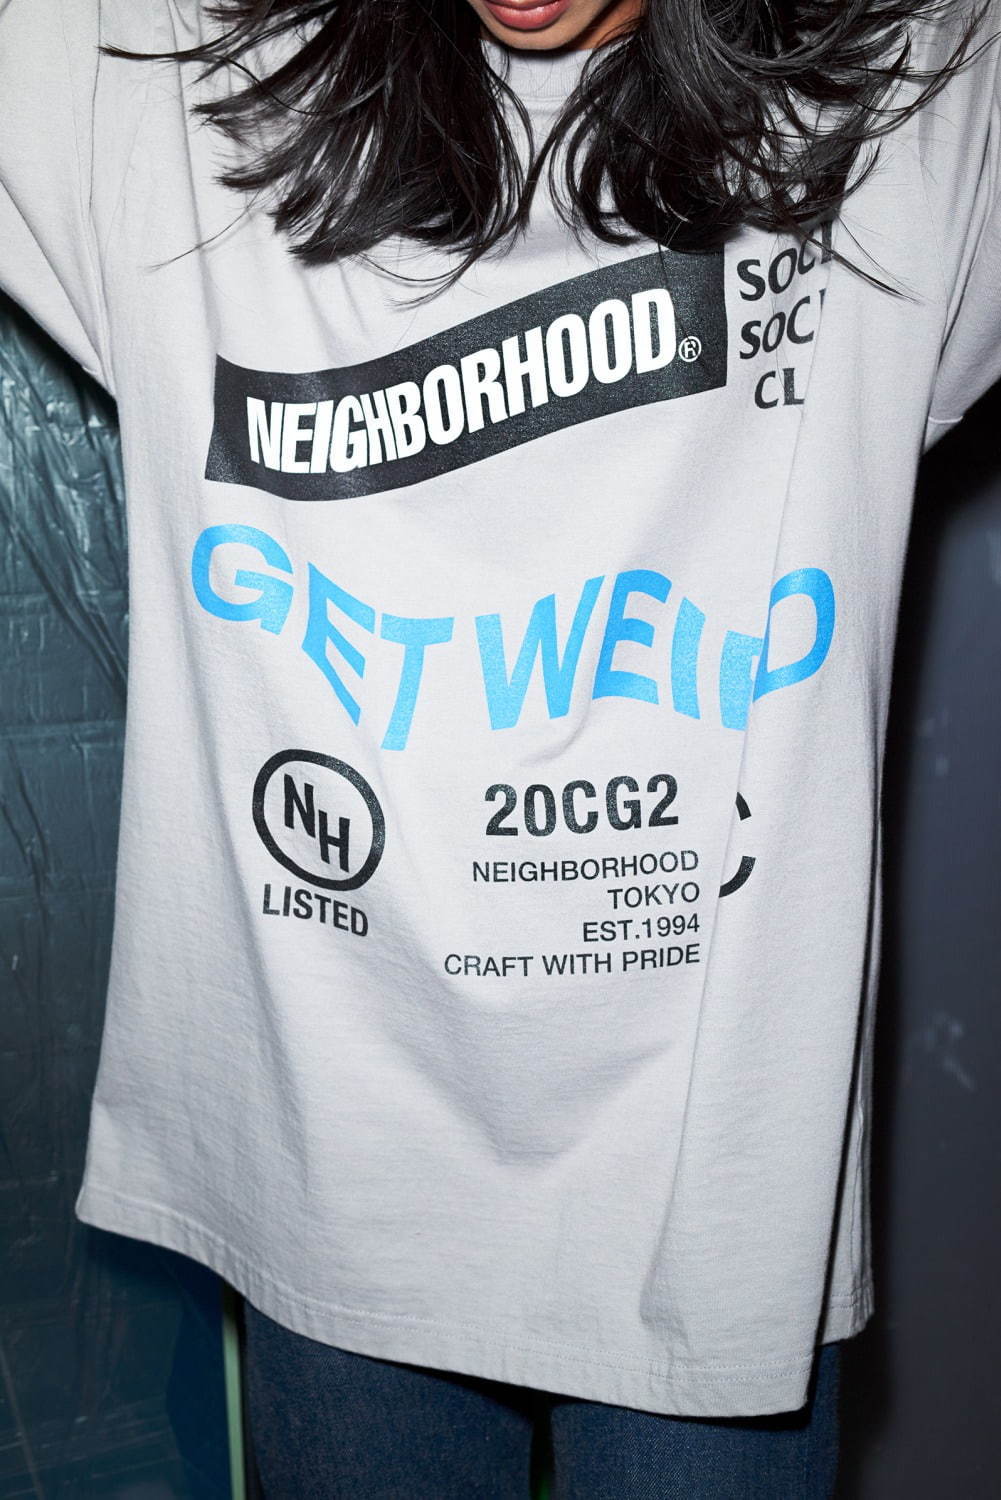 ネイバーフッド×アンチソーシャルソーシャルクラブ、“GET WEIRD”ロゴを 